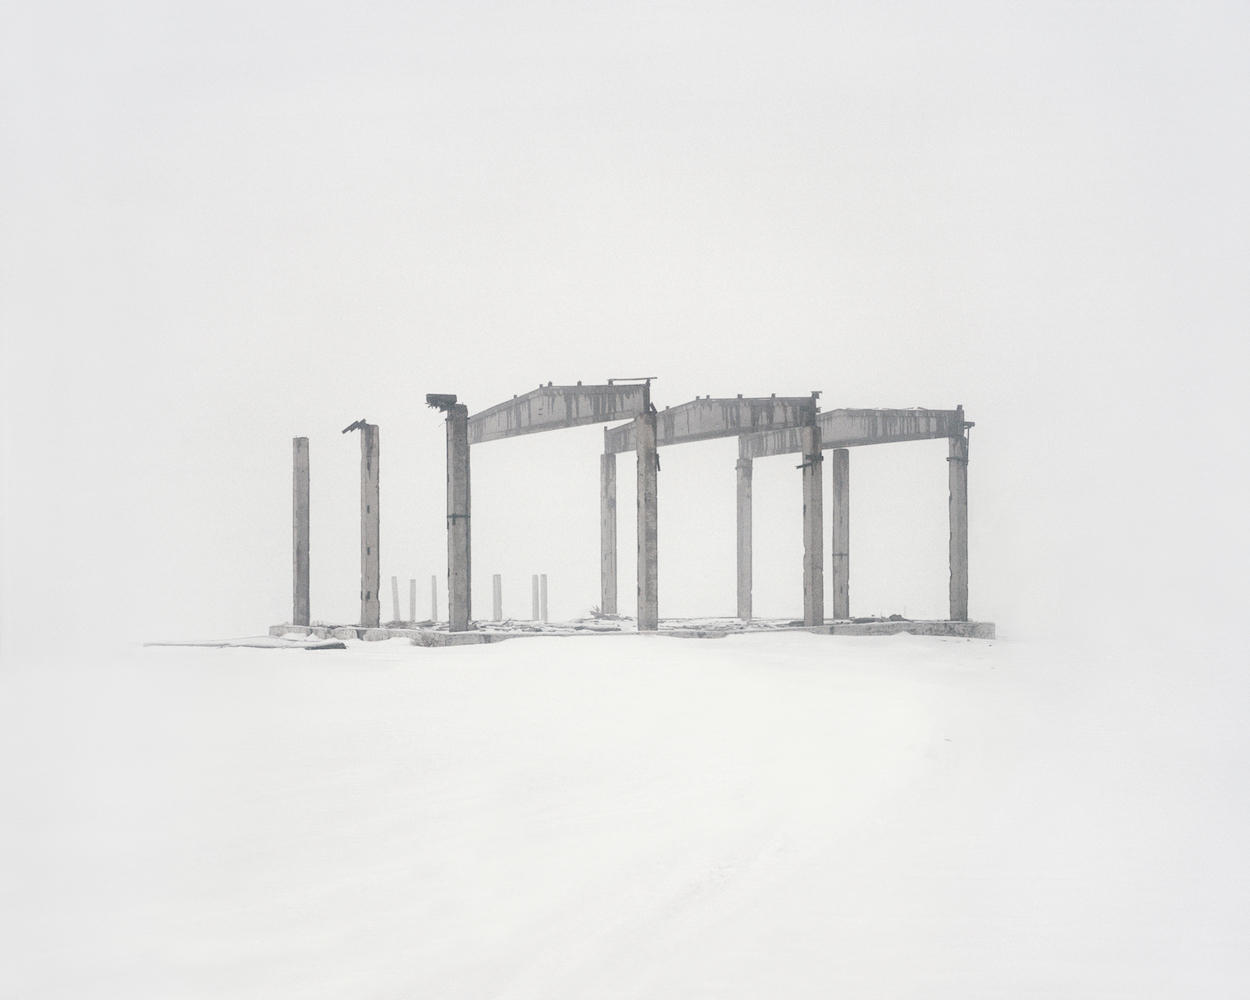 #26 из серии «Закрытые территории». Руины экспериментальной лазерной установки “ЗЕТ”. Казахстан, Карагандинская область